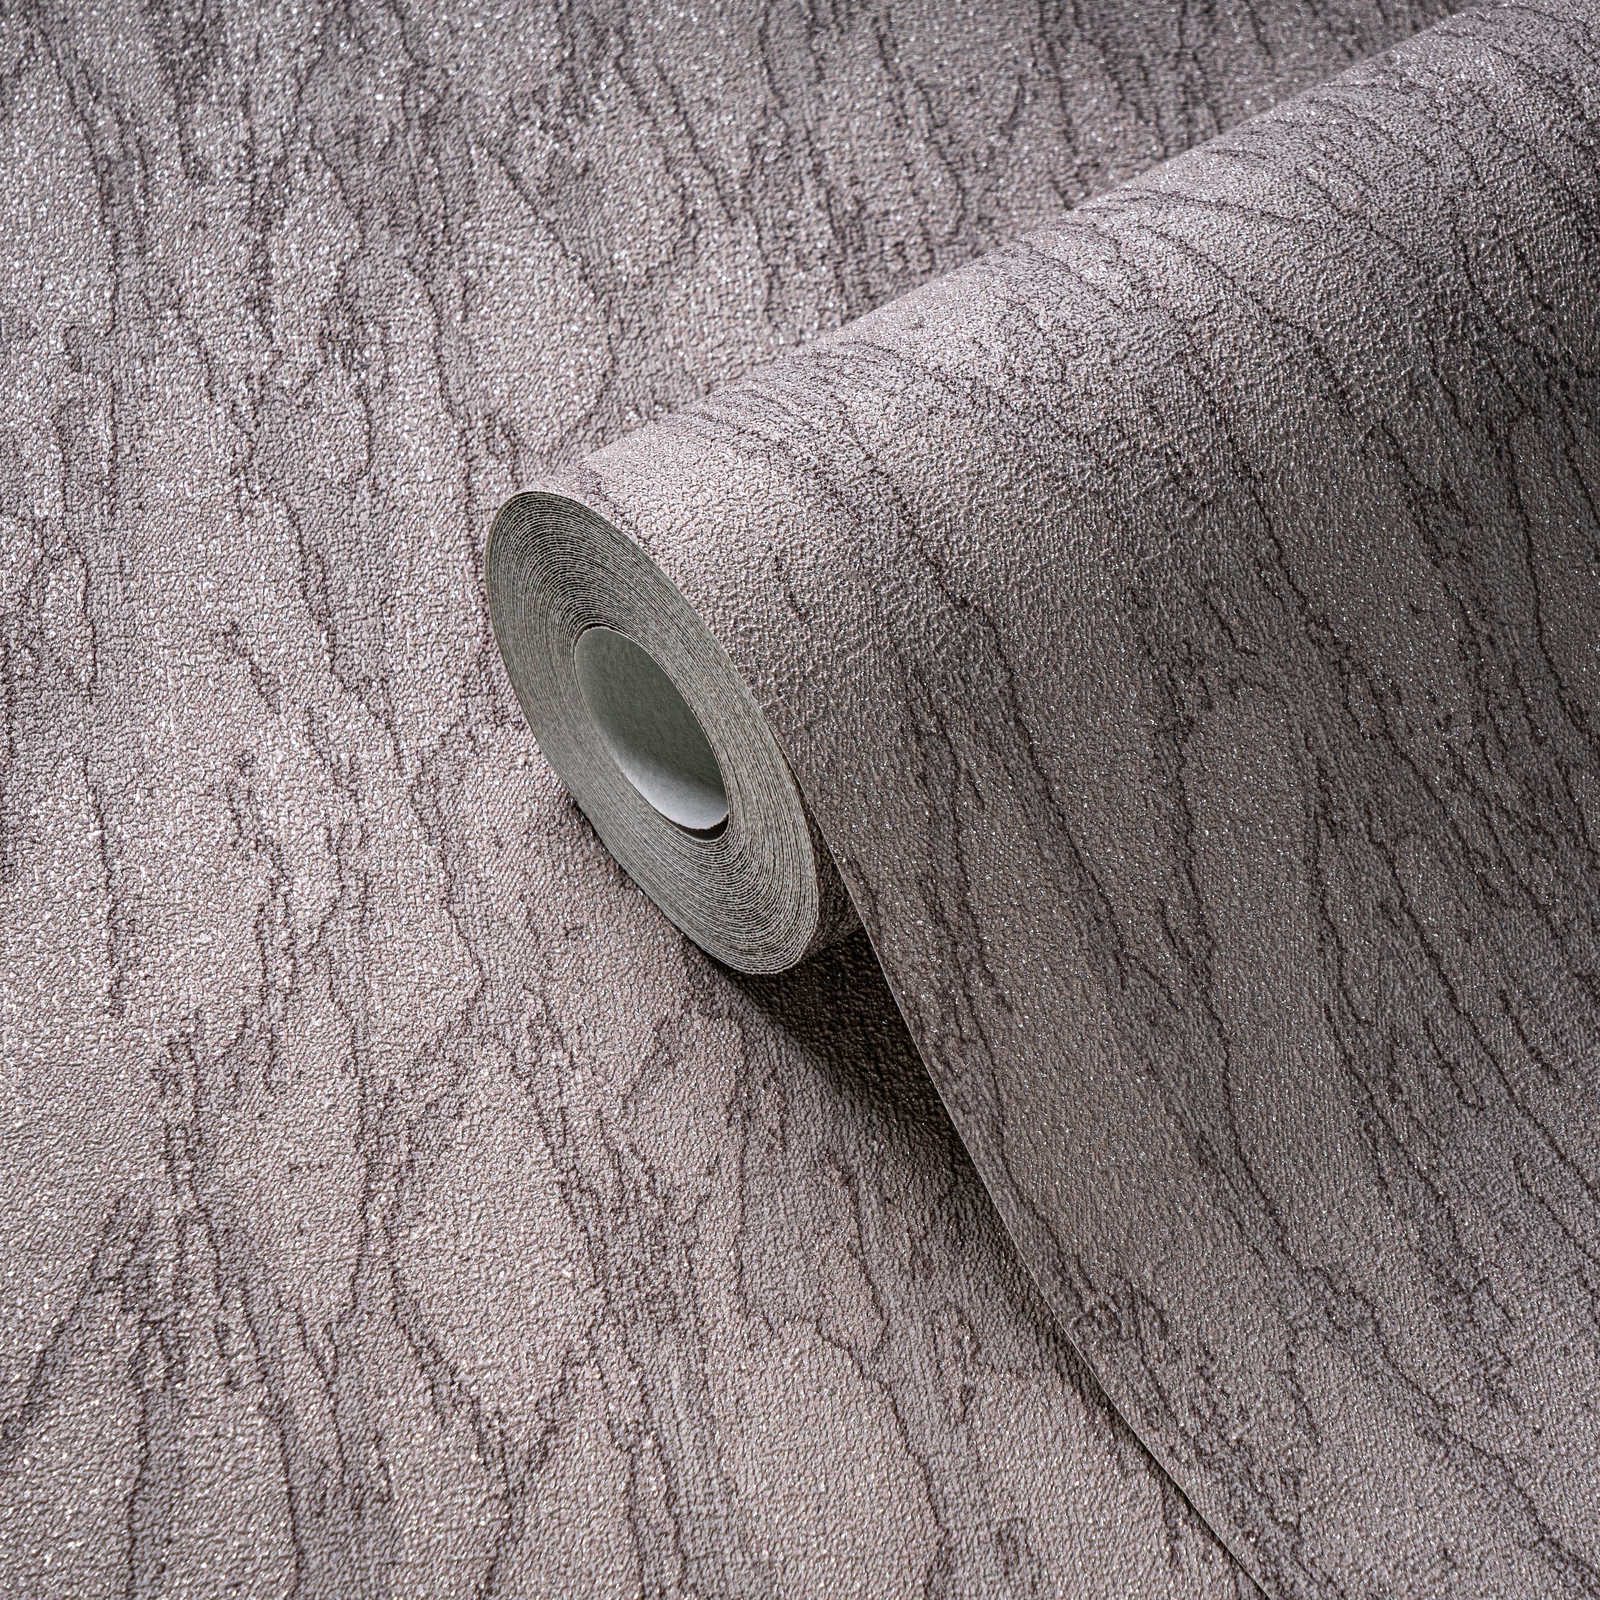             Vliesbehang in gipslook met accenten en abstract patroon - grijs, beige, zilver
        